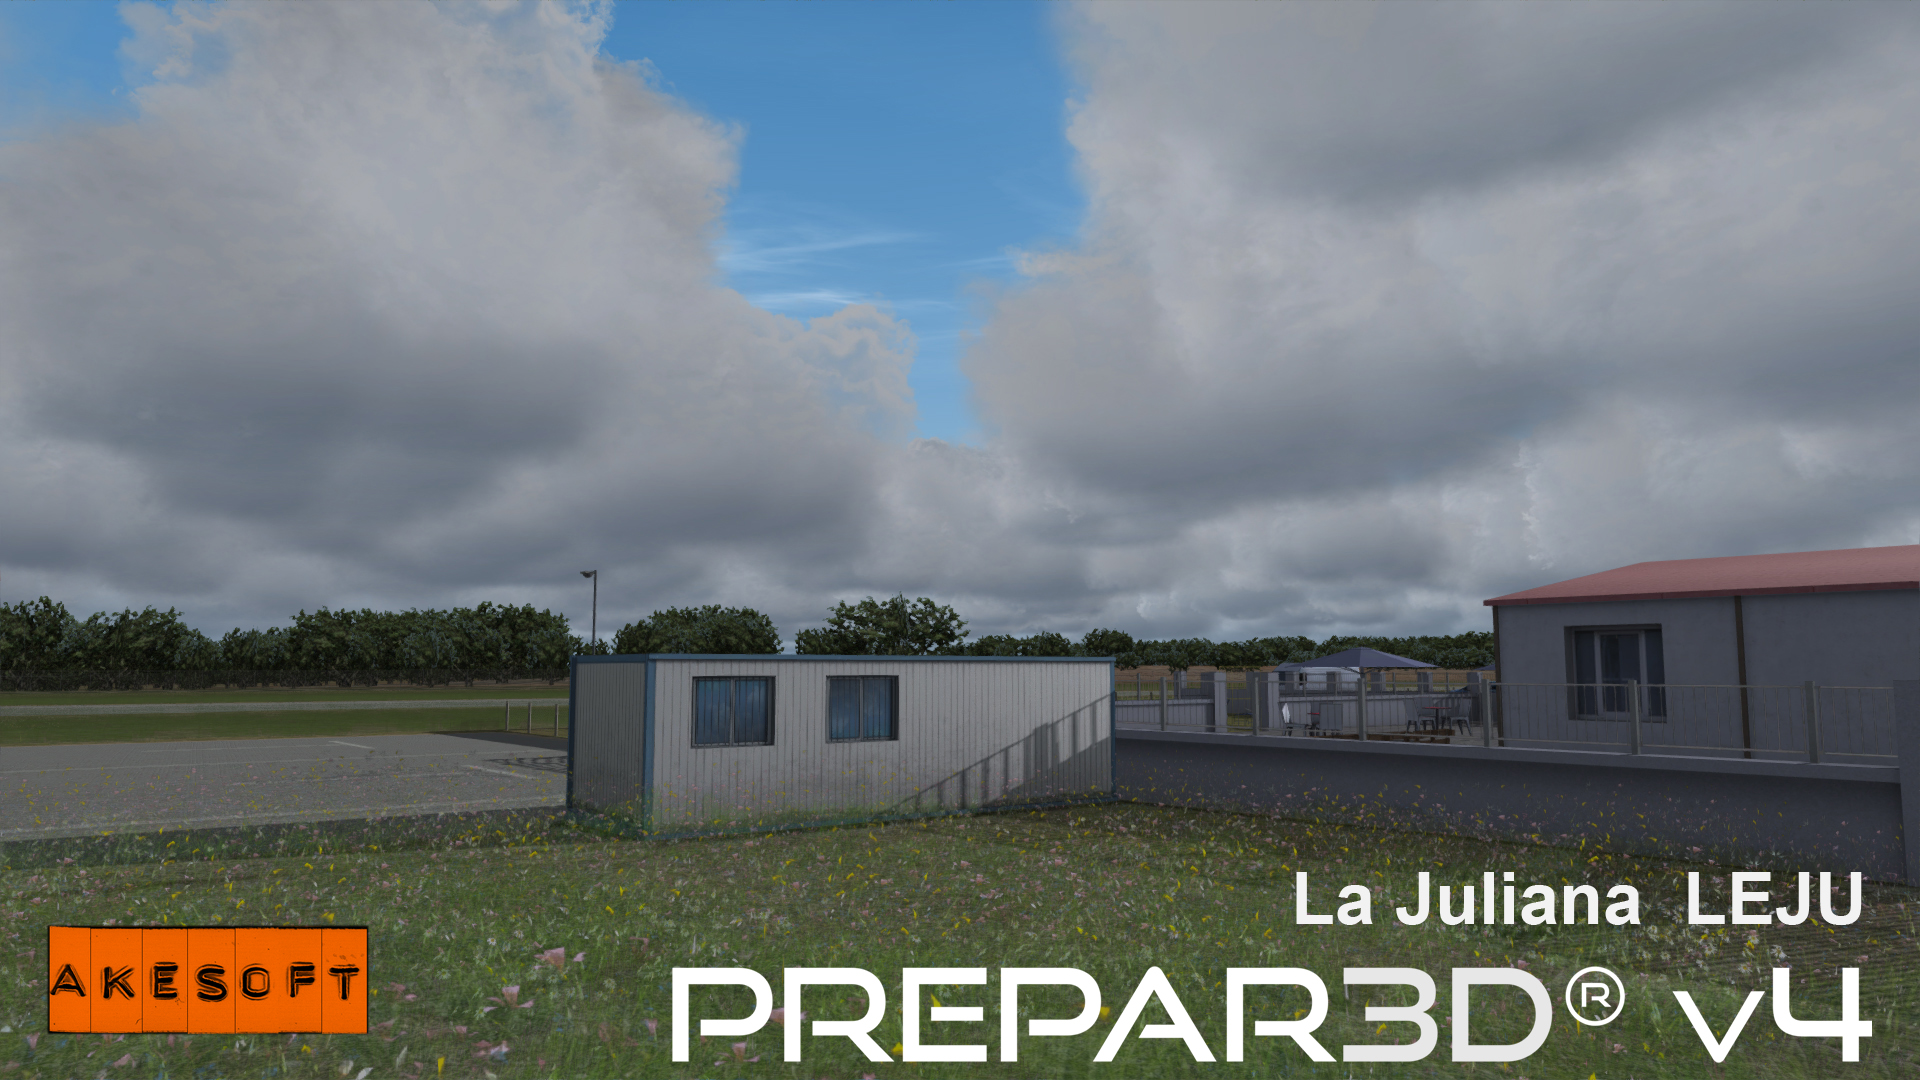 L'aéroport de La Juliana par Akesoft est disponible pour P3D